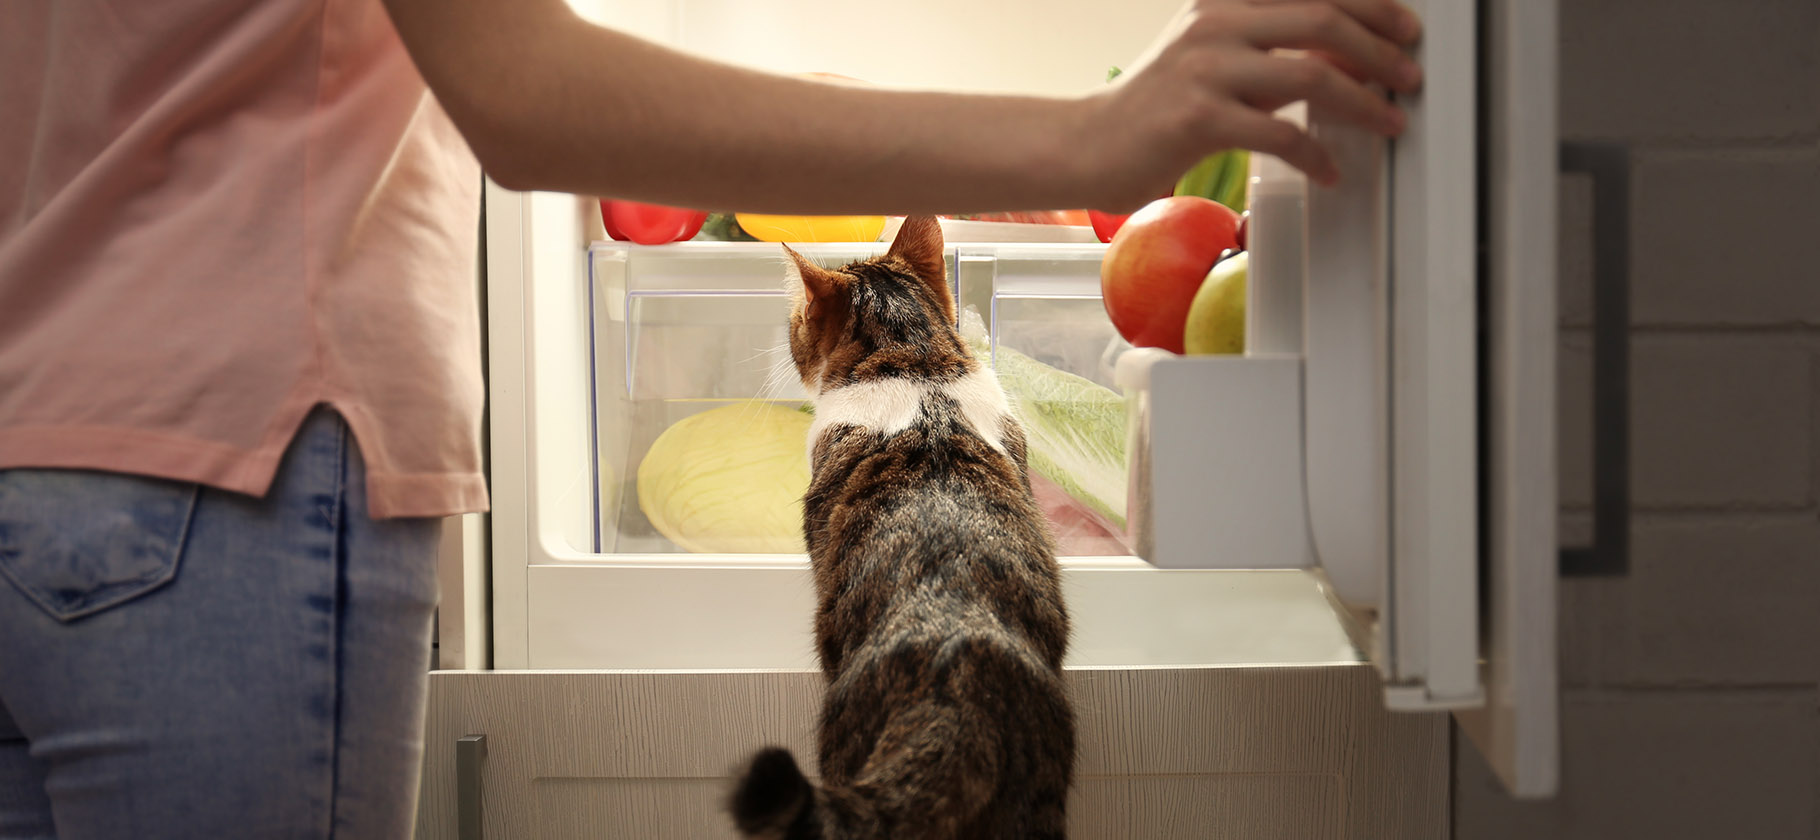 Как выбрать холодильник и не переплатить за лишние функции